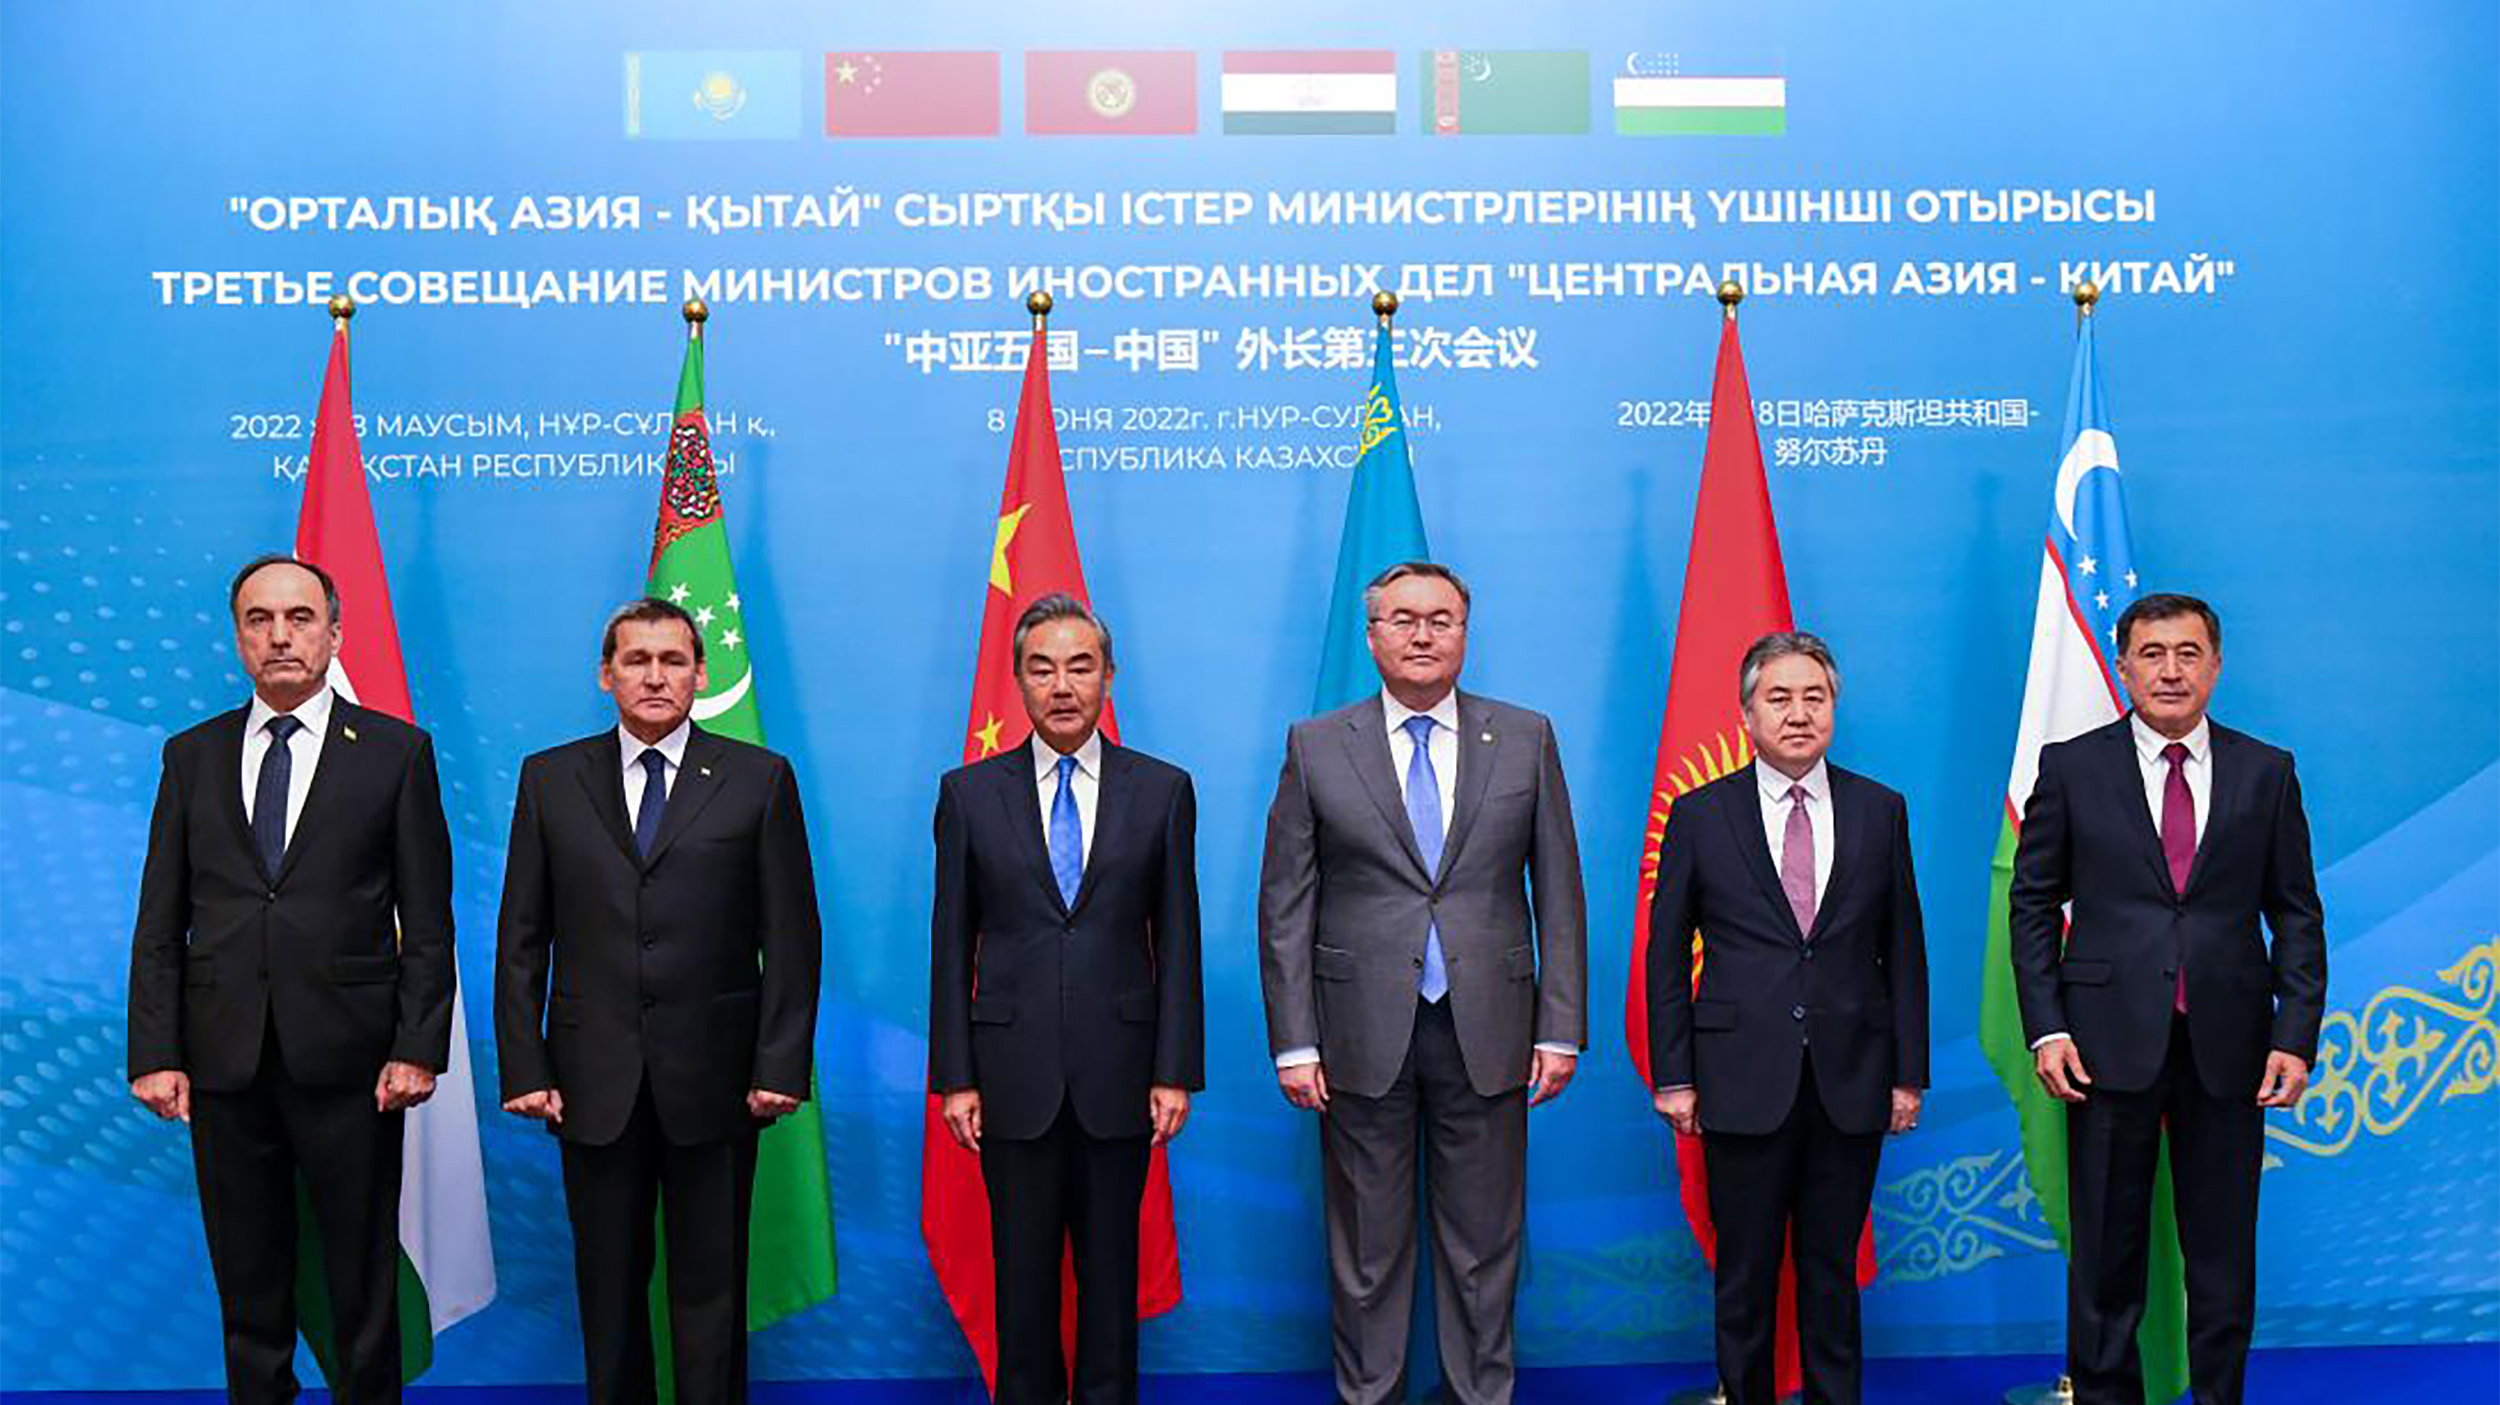 التنافس الدولي في آسيا الوسطى: هل هي لعبة كبرى جديدة؟